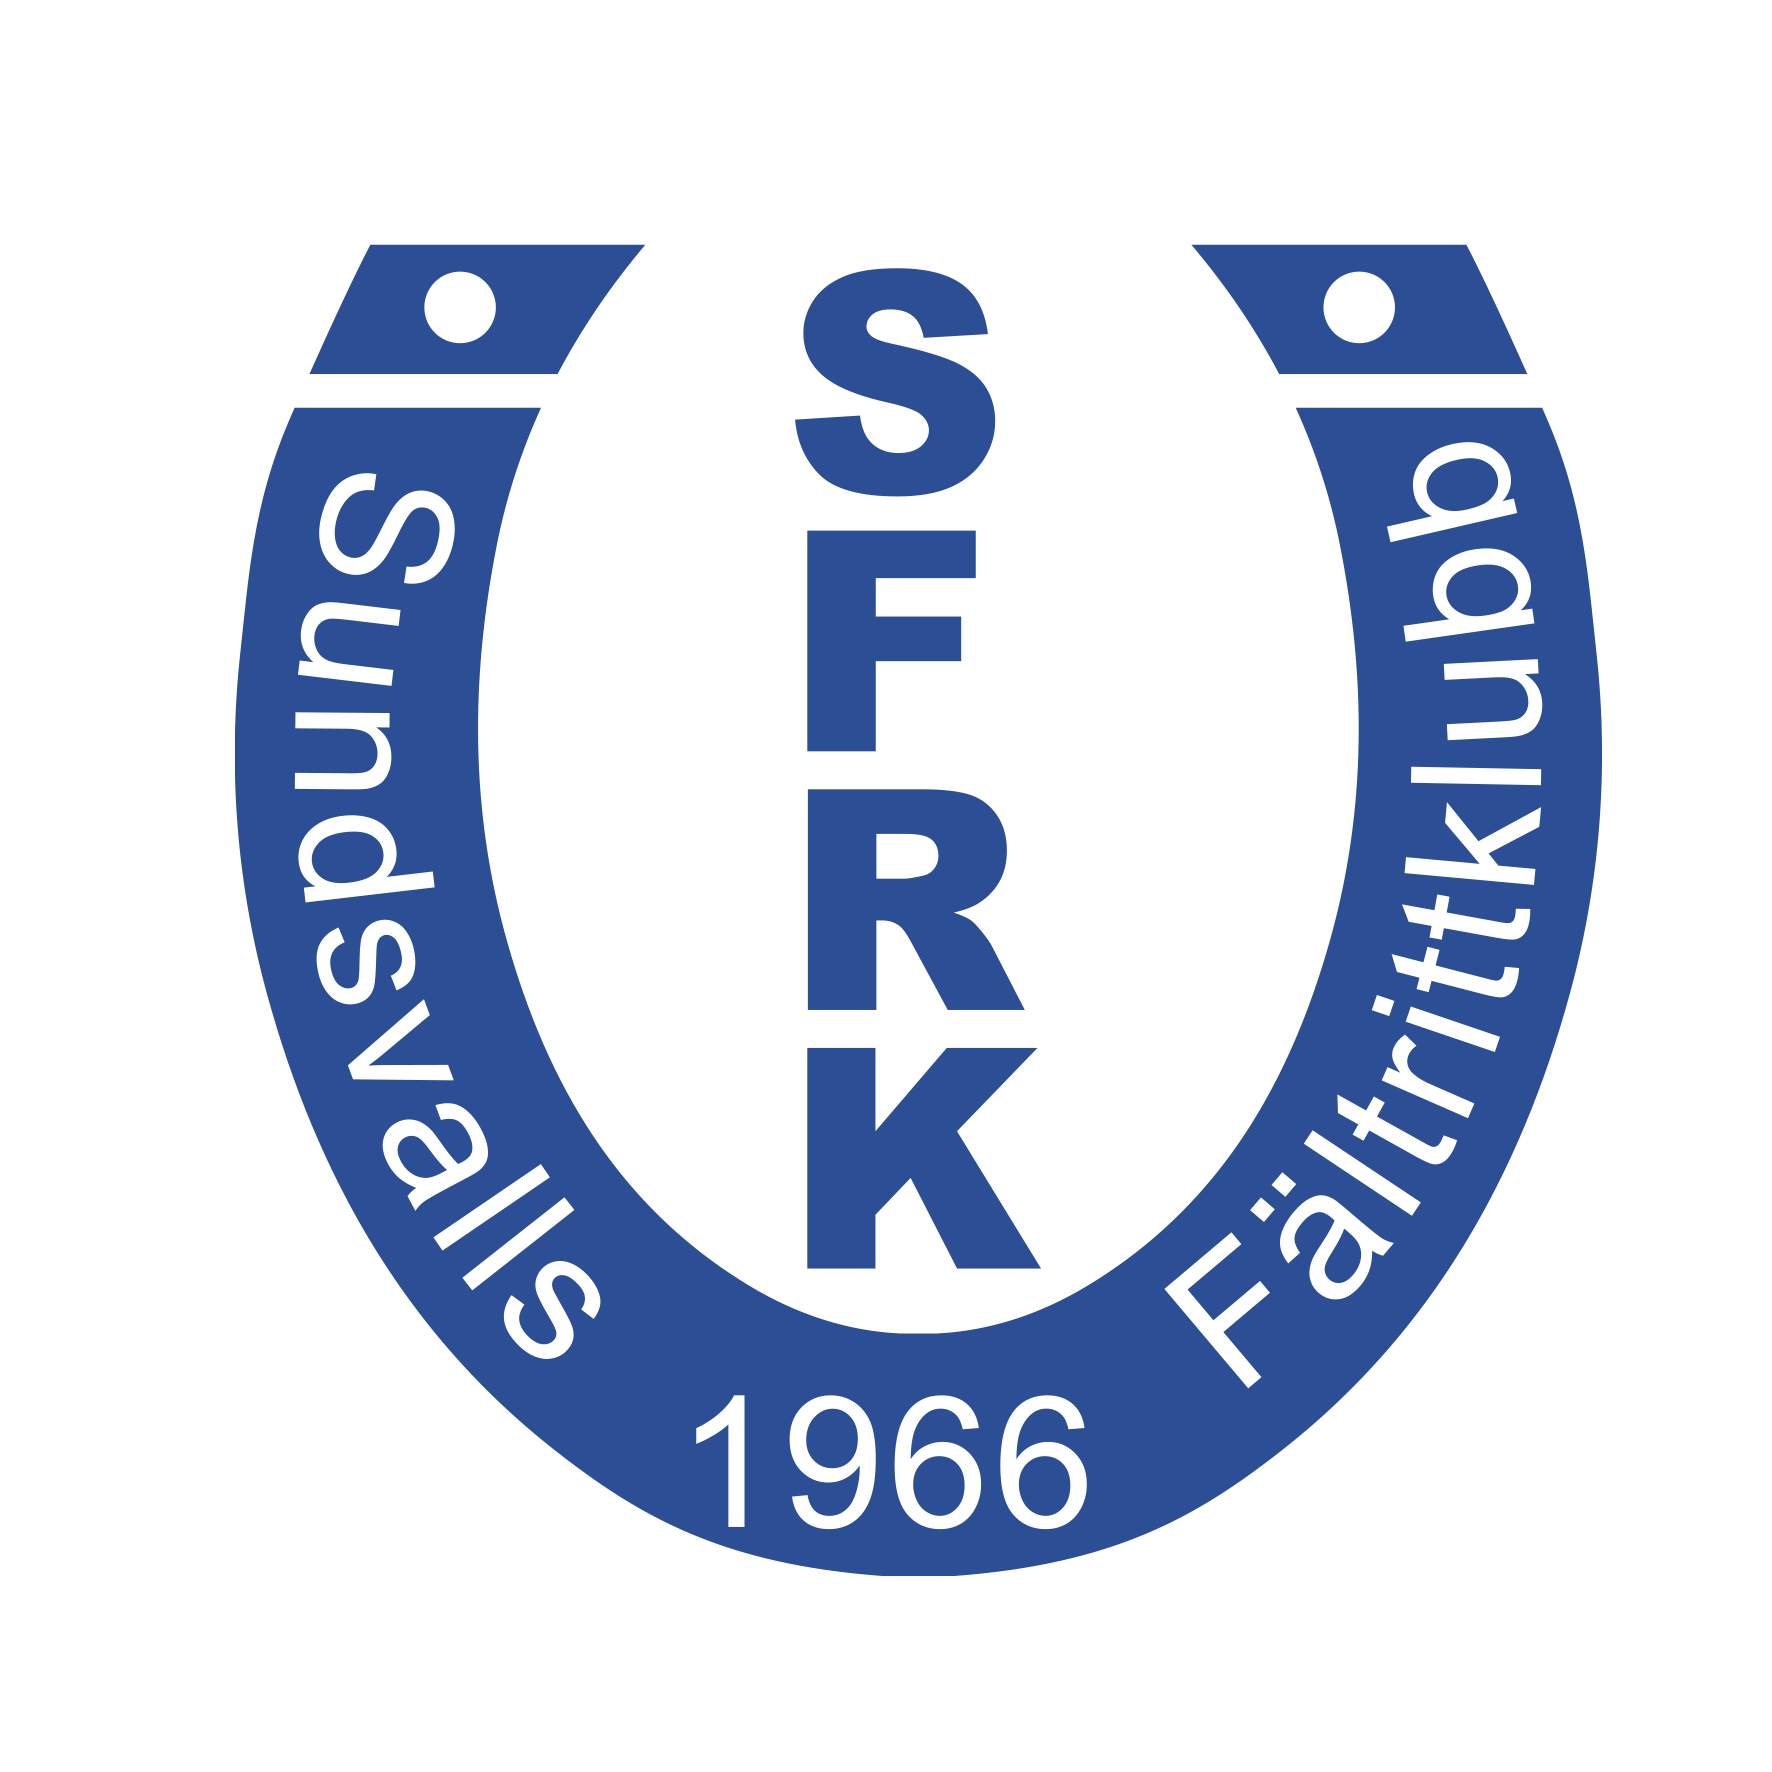 Sundsvalls Fältrittklubb logo